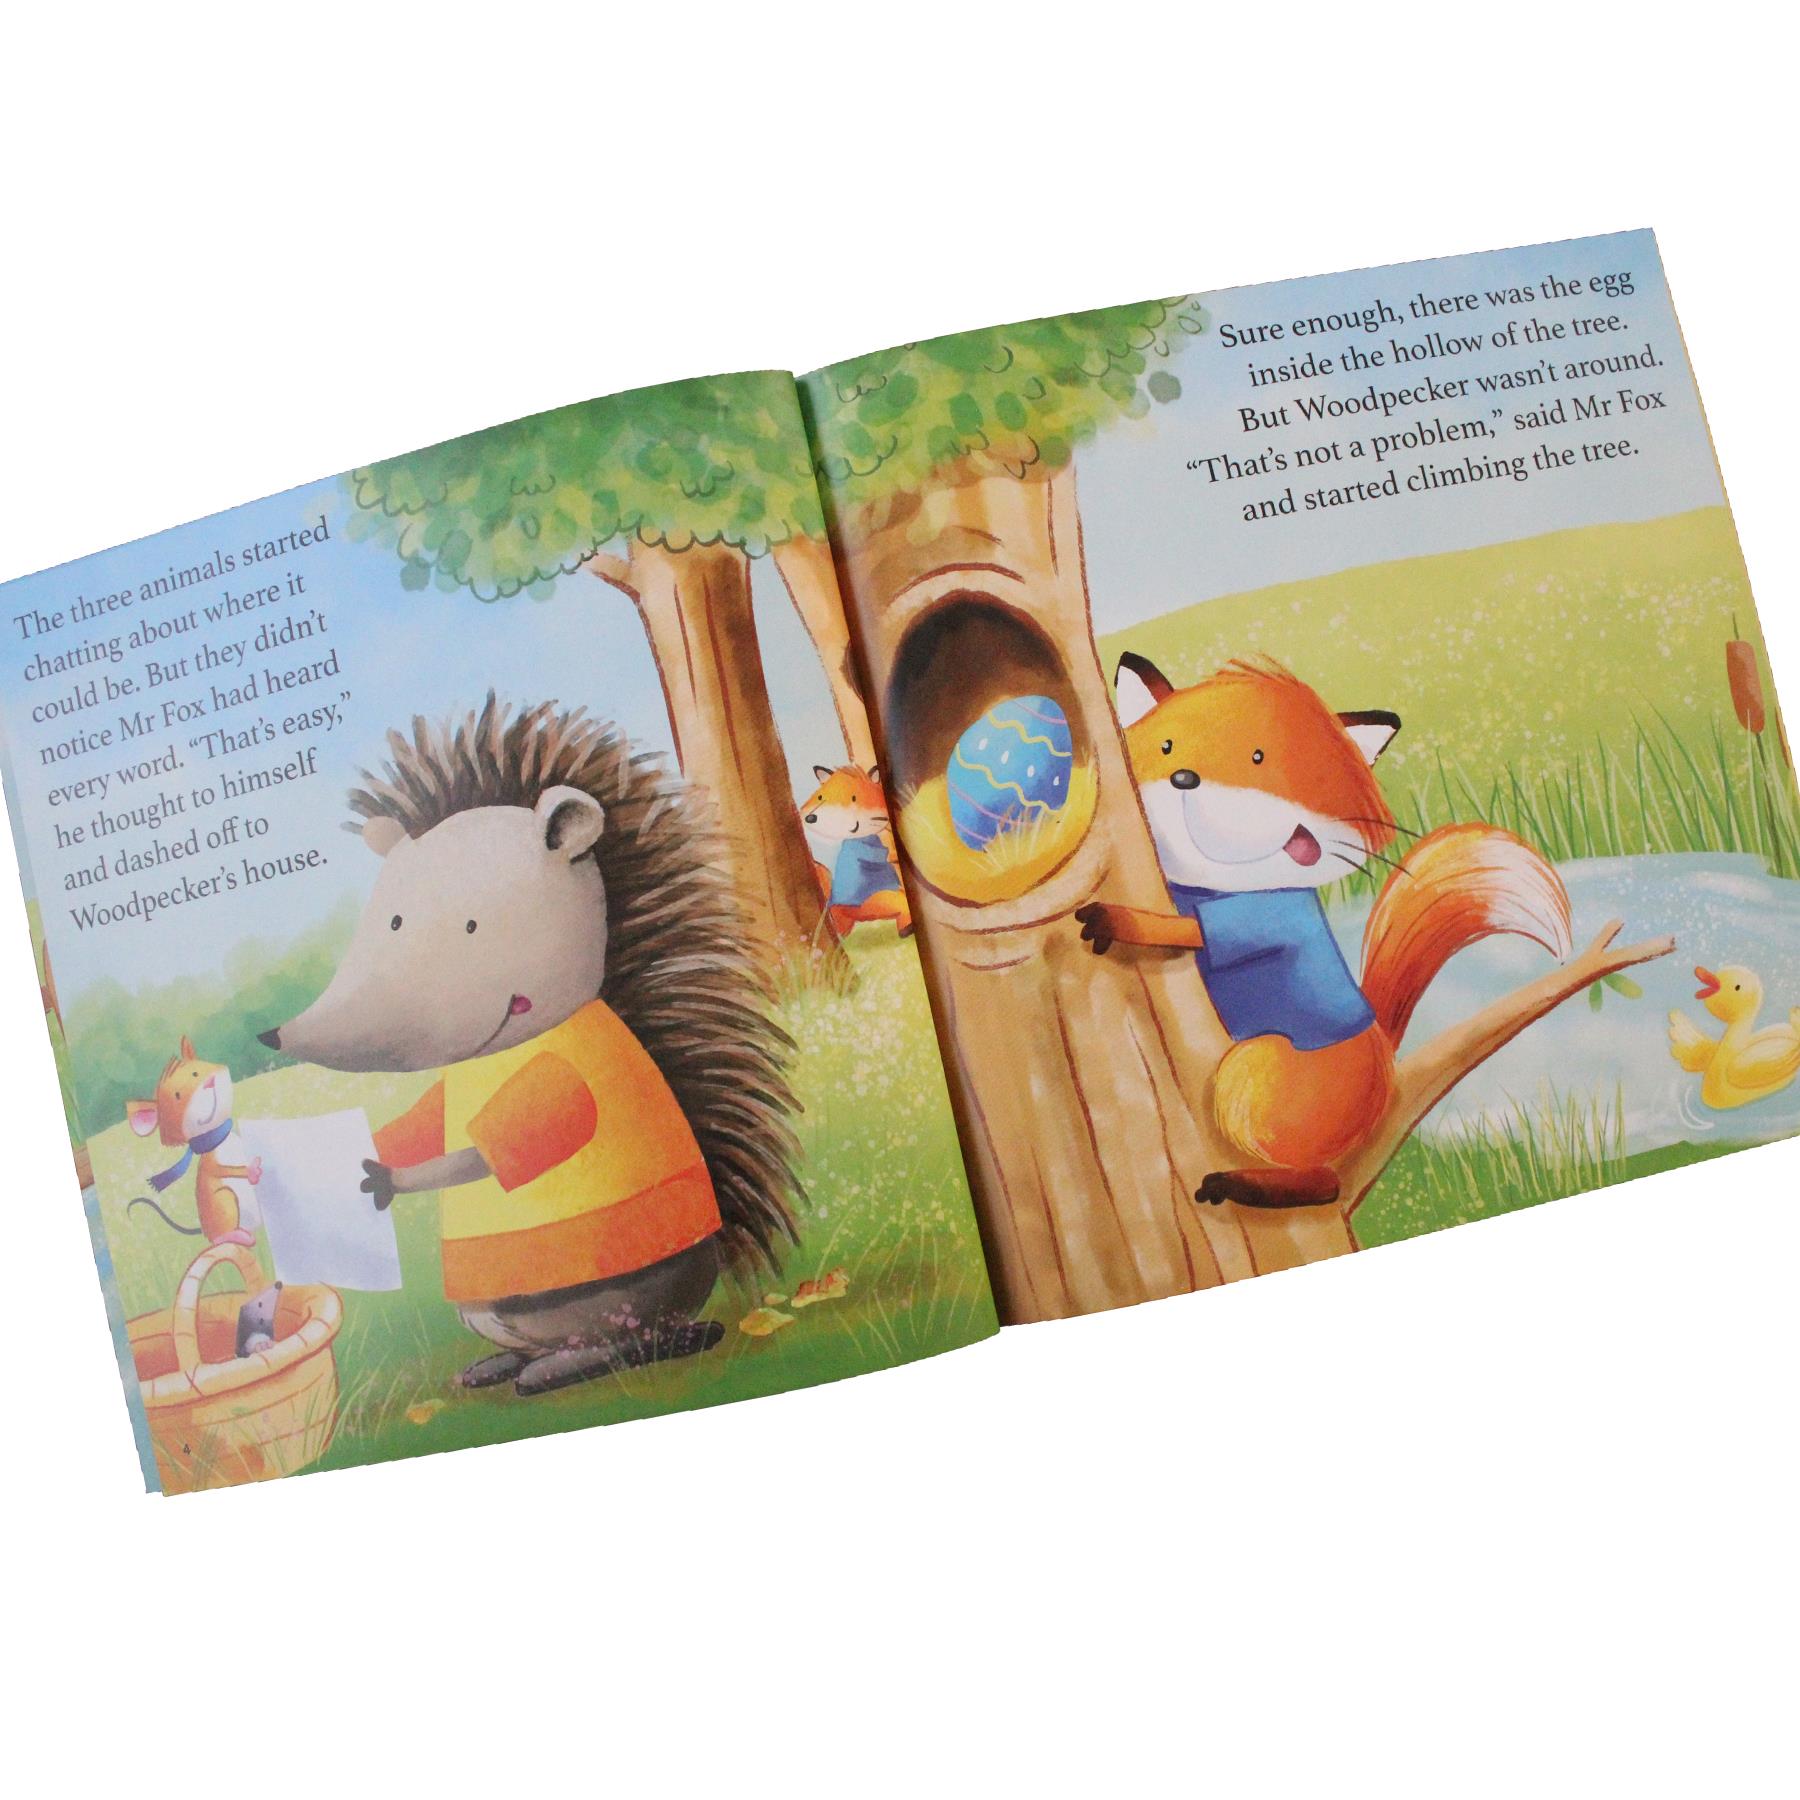 Easter Egg Hunt Children's Paperback Story Book by Helen Jones